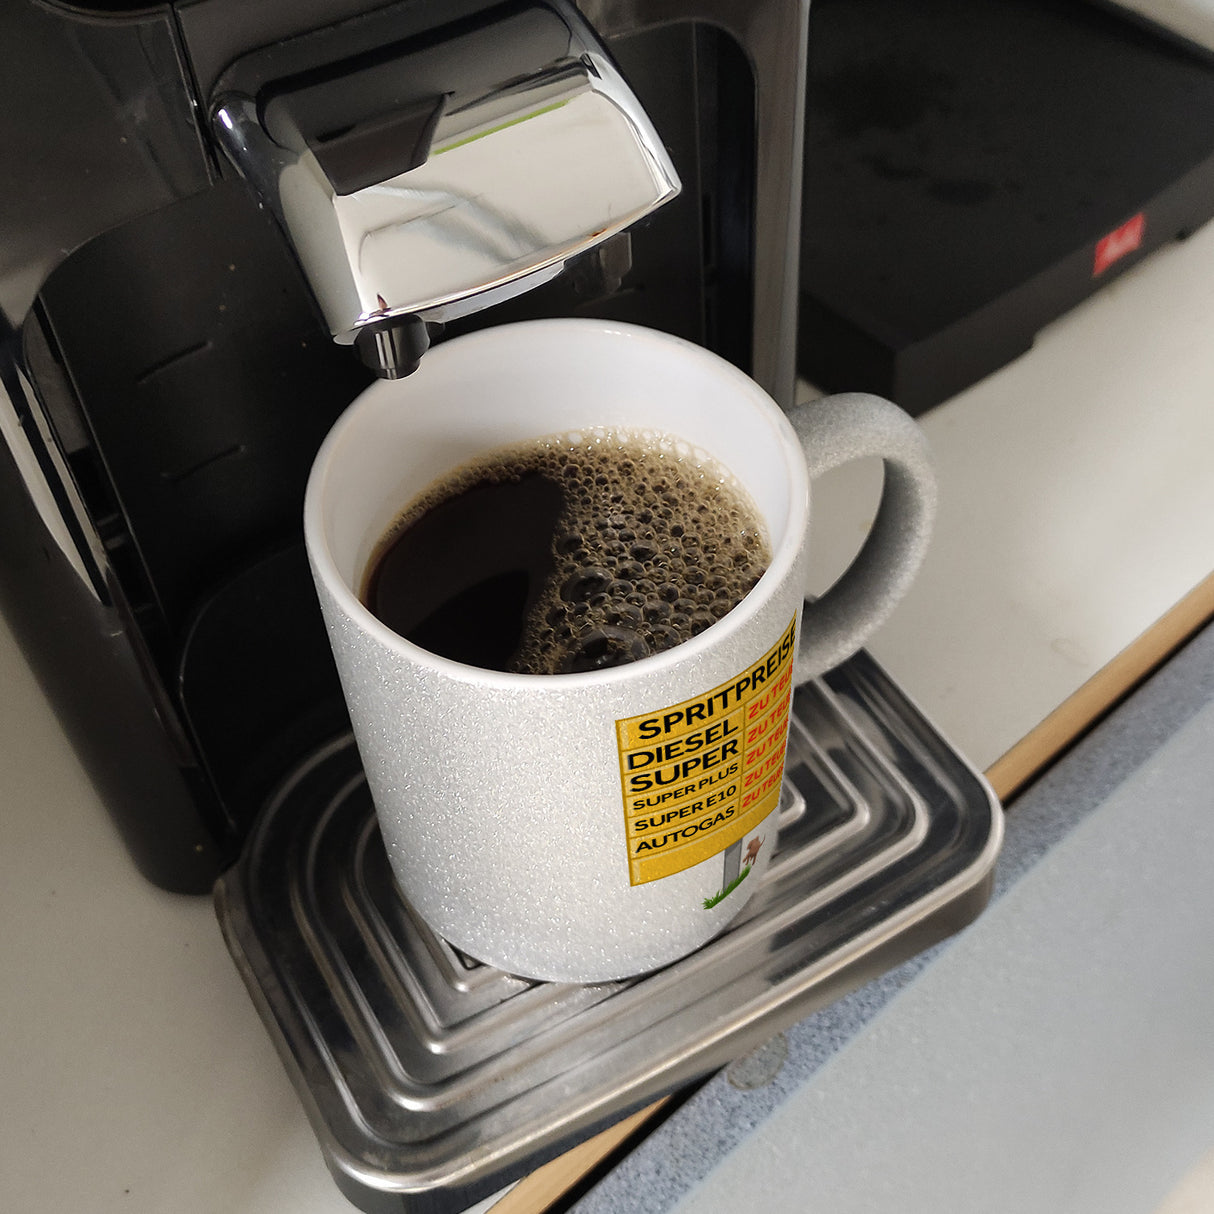 Spritpreise Anzeigetafel Kaffeebecher für Autofahrer